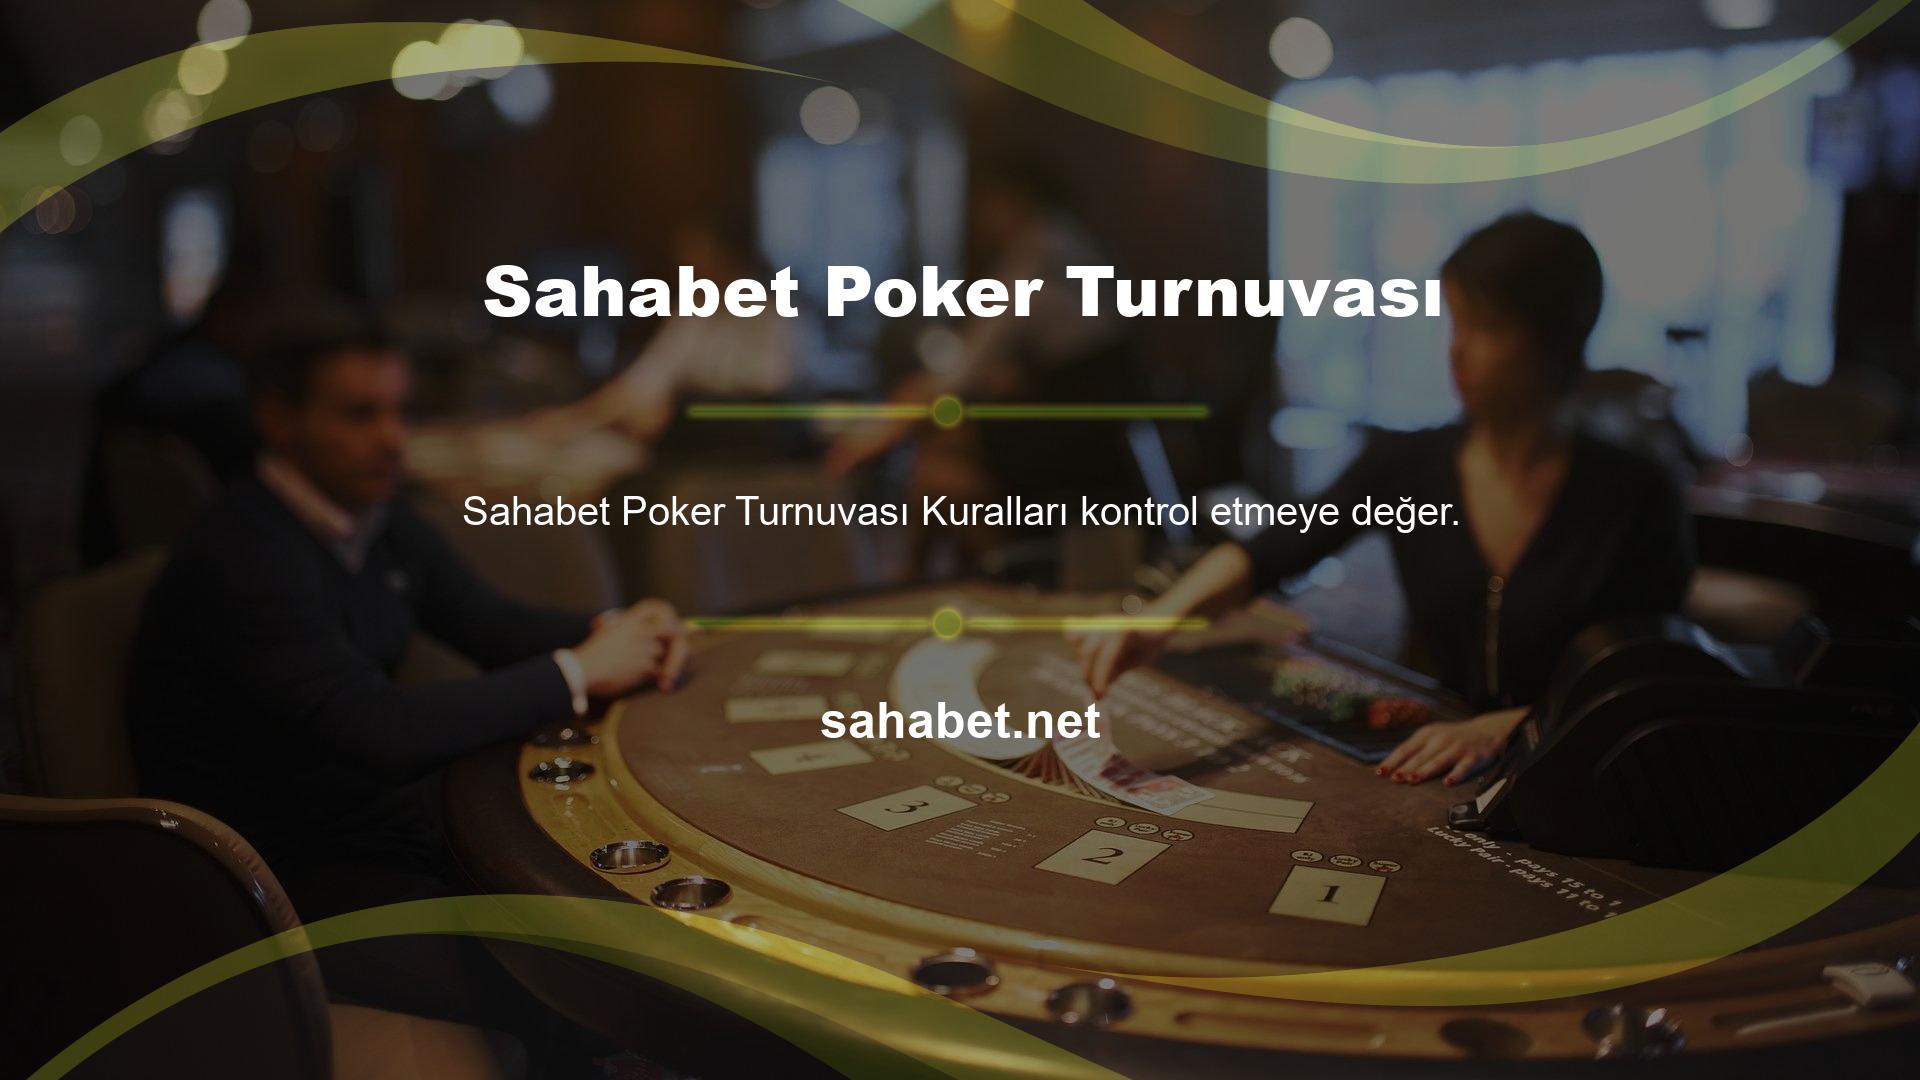 En iyi ödülleri sunan ve turnuvalara ev sahipliği yapan sitelerden biri olan Sahabet favori oyunlarınız arasında poker arayabilir ve kayıt olabilirsiniz